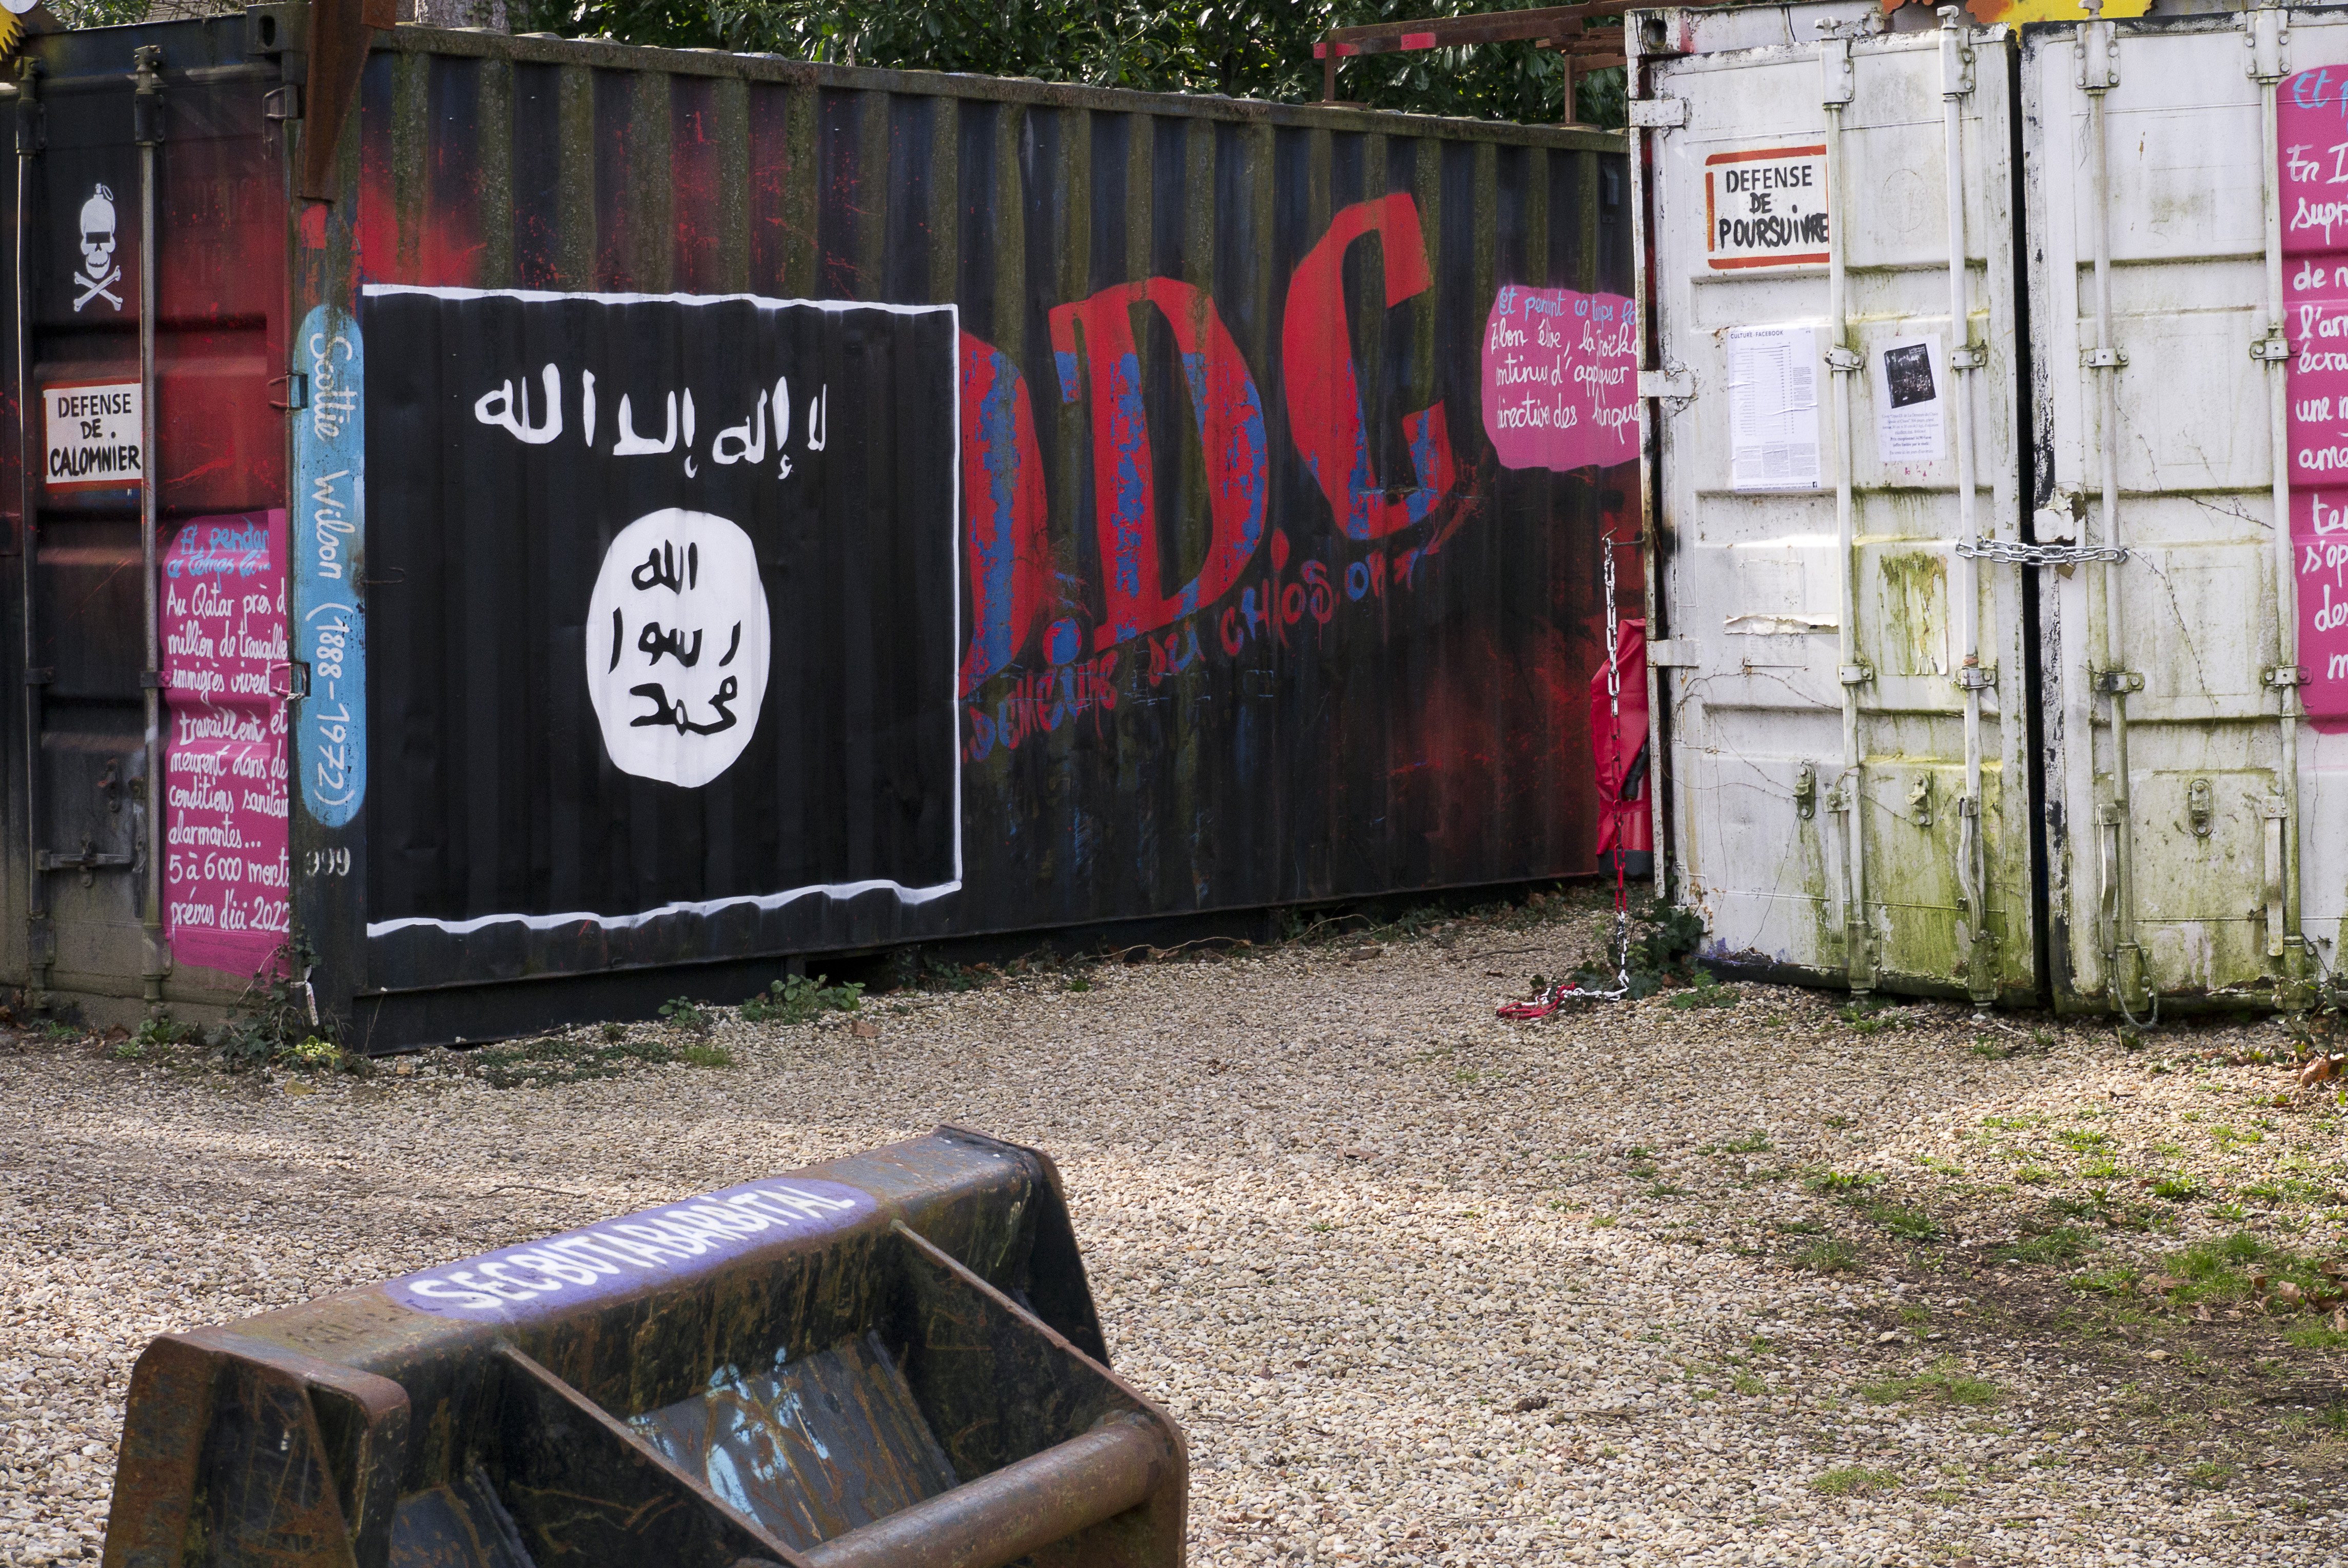 Judici a un gihadista de Roda de Ter per pertinença al Daesh